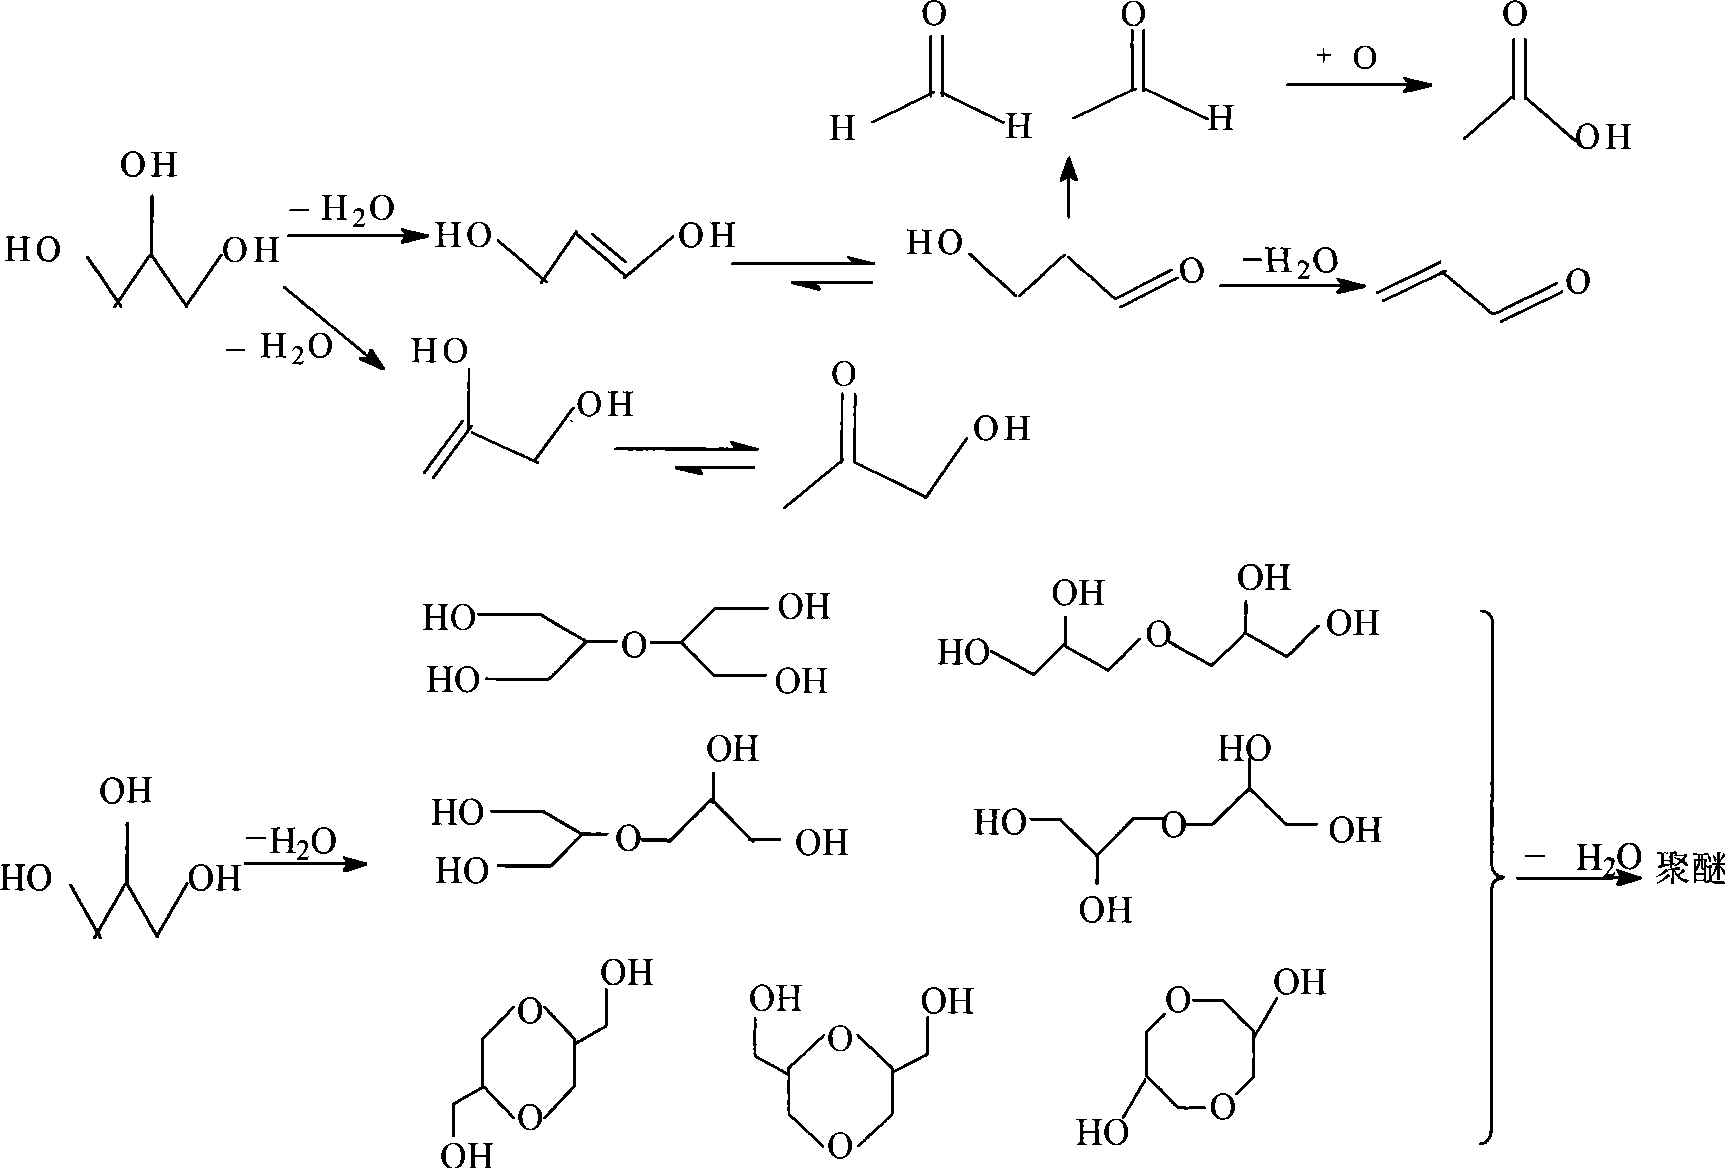 Method for preparing acrylic aldehyde by biological glycerol dehydration